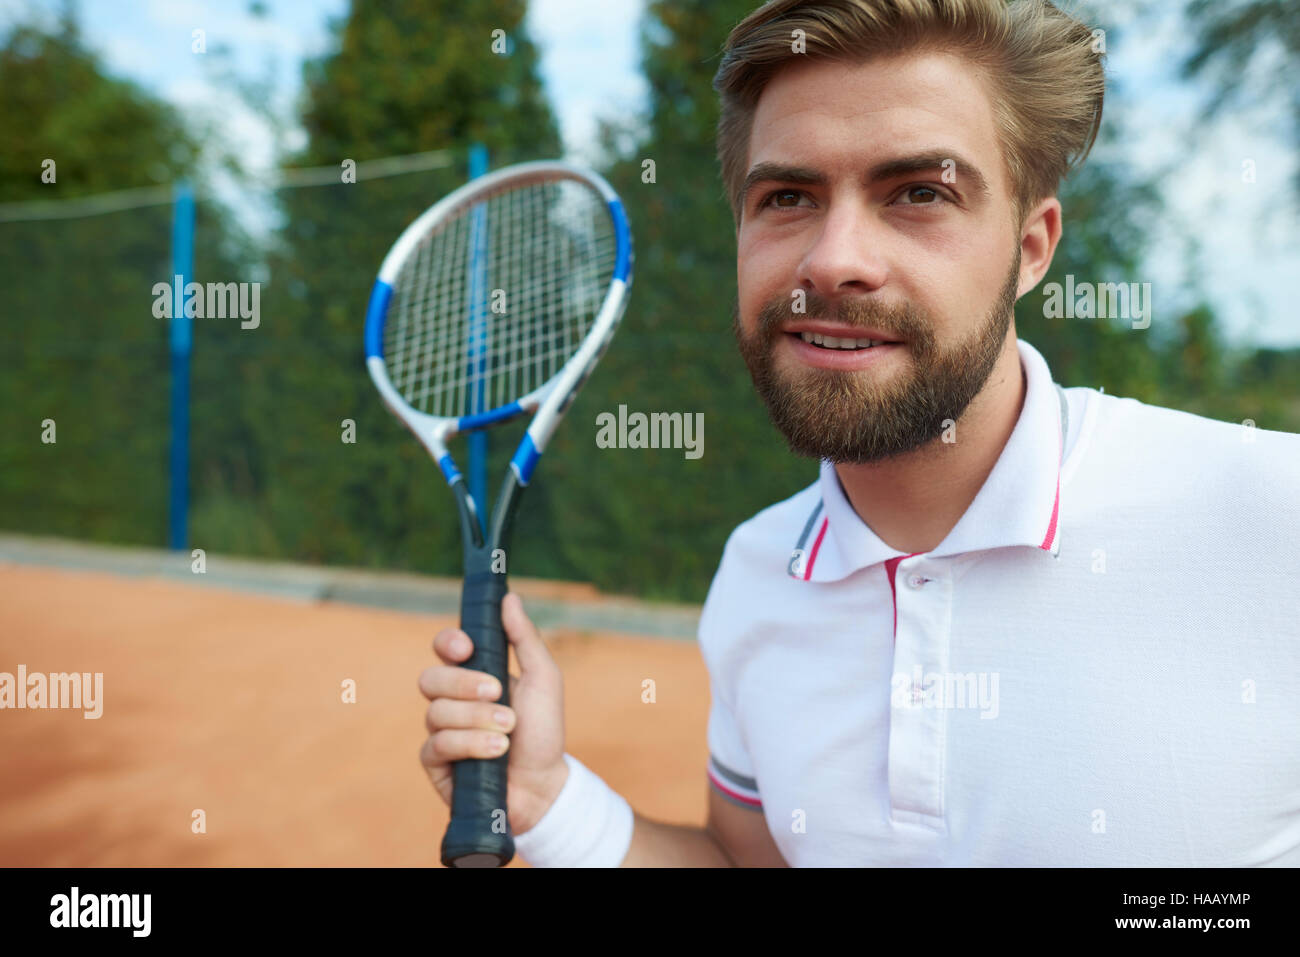 Sventolare una racchetta da tennis da parte del giocatore Foto Stock